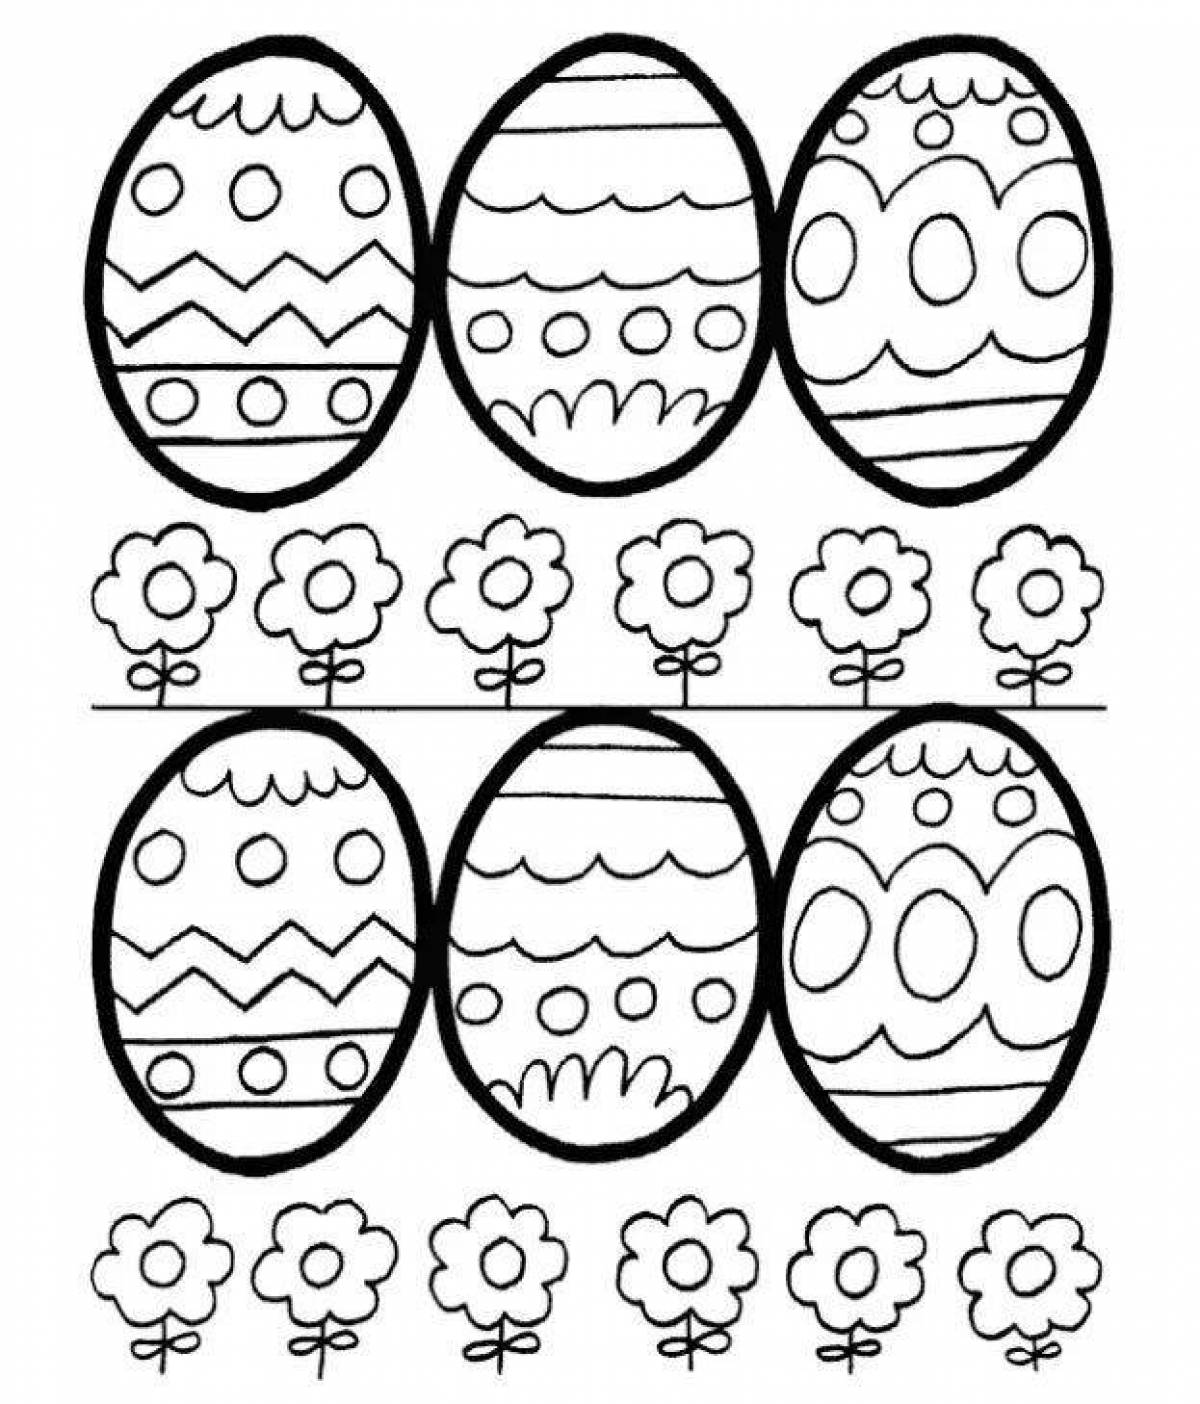 Распечатать раскраску яйца. Яйцо пасхальное разукрашка для малышей. Раскраски яйца на Пасху для детей. Трафареты яиц для раскрашивания. Раскраски пасочных яиц.